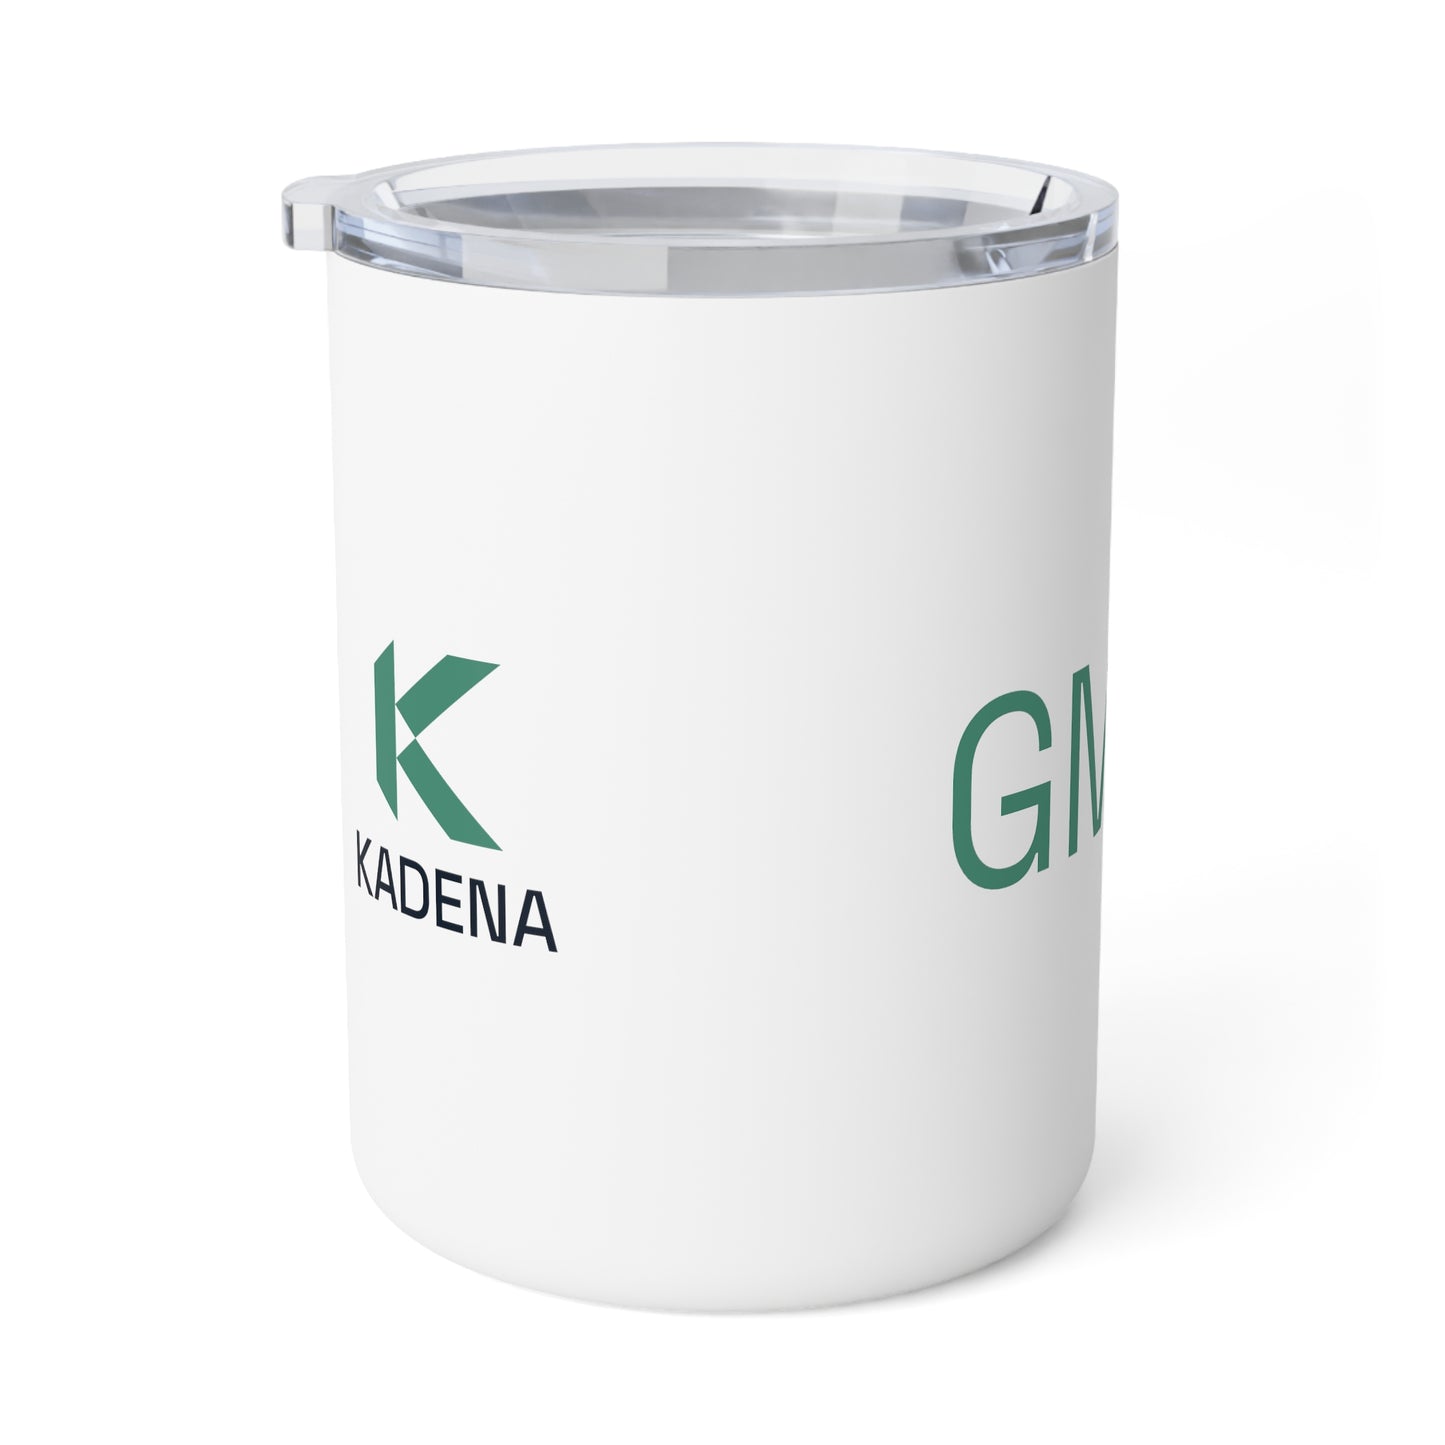 Kadena Insulated Coffee Mug, 10oz